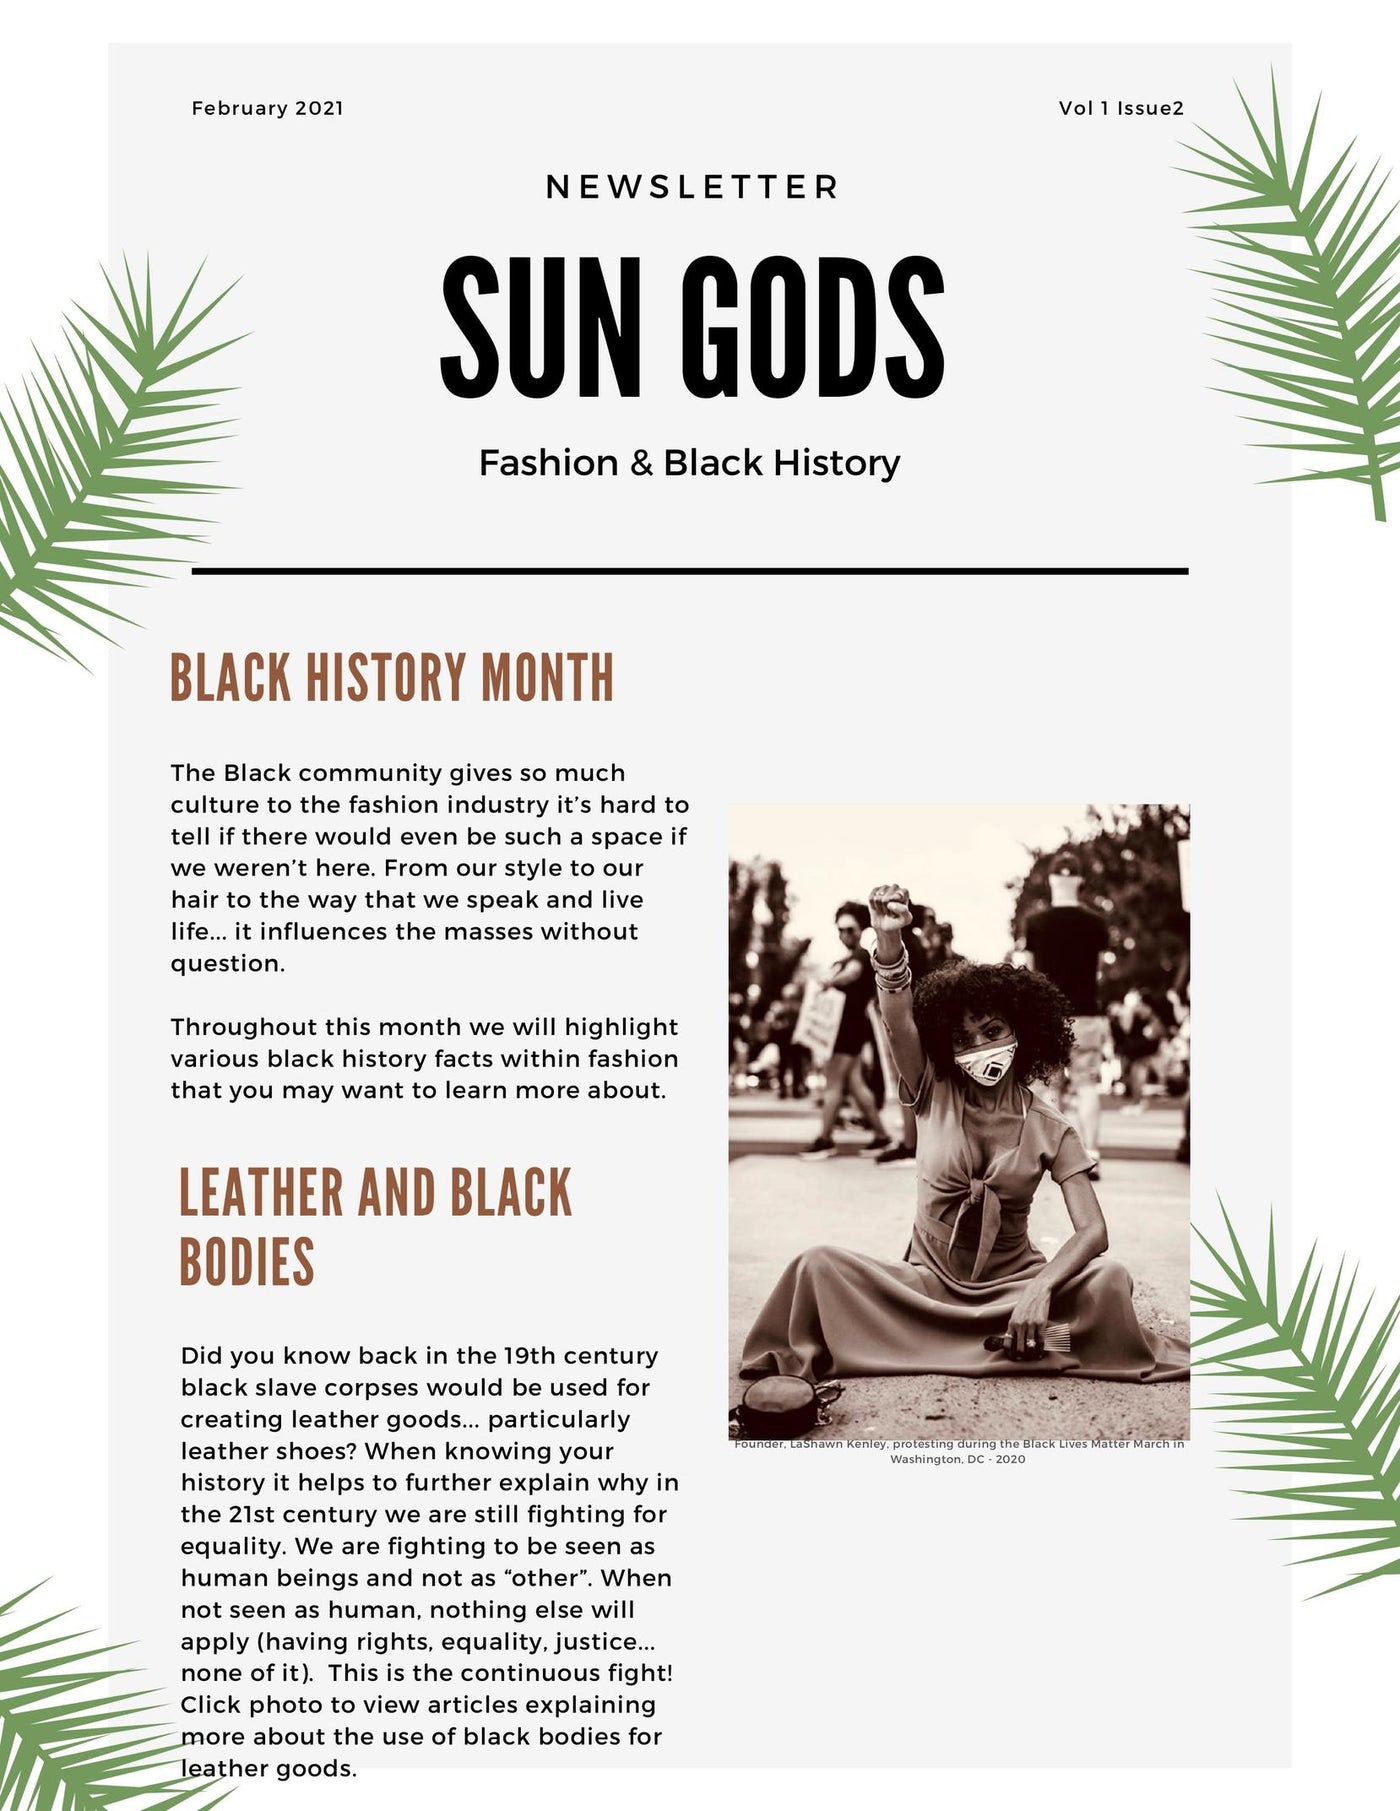 Fashion & Black History